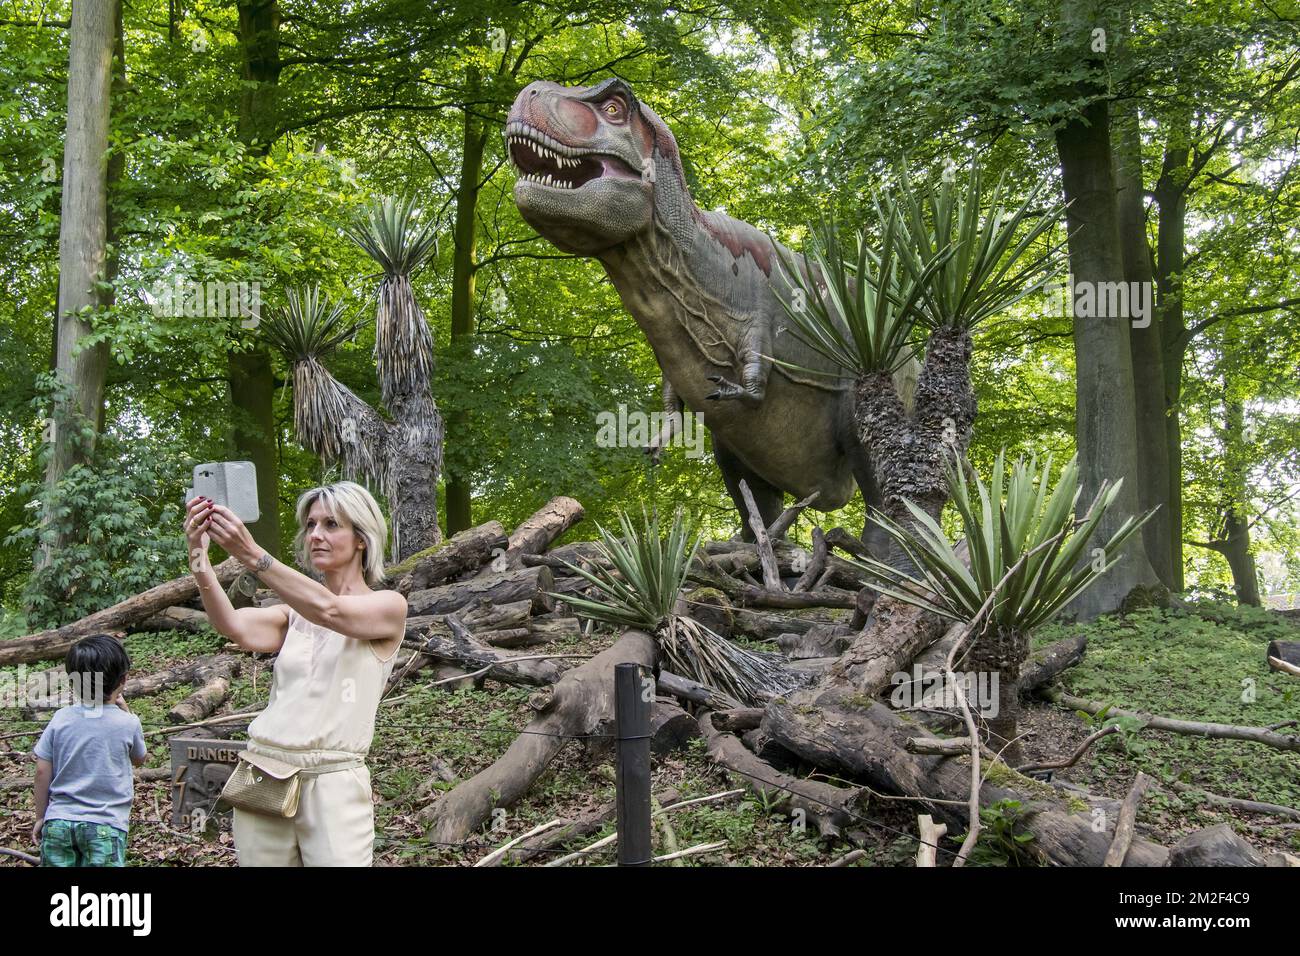 Donna con bambino che prende selfie con smartphone di fronte al Tyrannosaurus rex, coelurosaurian theropod dinosaur del periodo cretaceo superiore | Réplique de tyrannosaure, dinosaure du partie supérieure du maastrachtien, dernier étage du sistème Crétacé 09/05/2018 Foto Stock